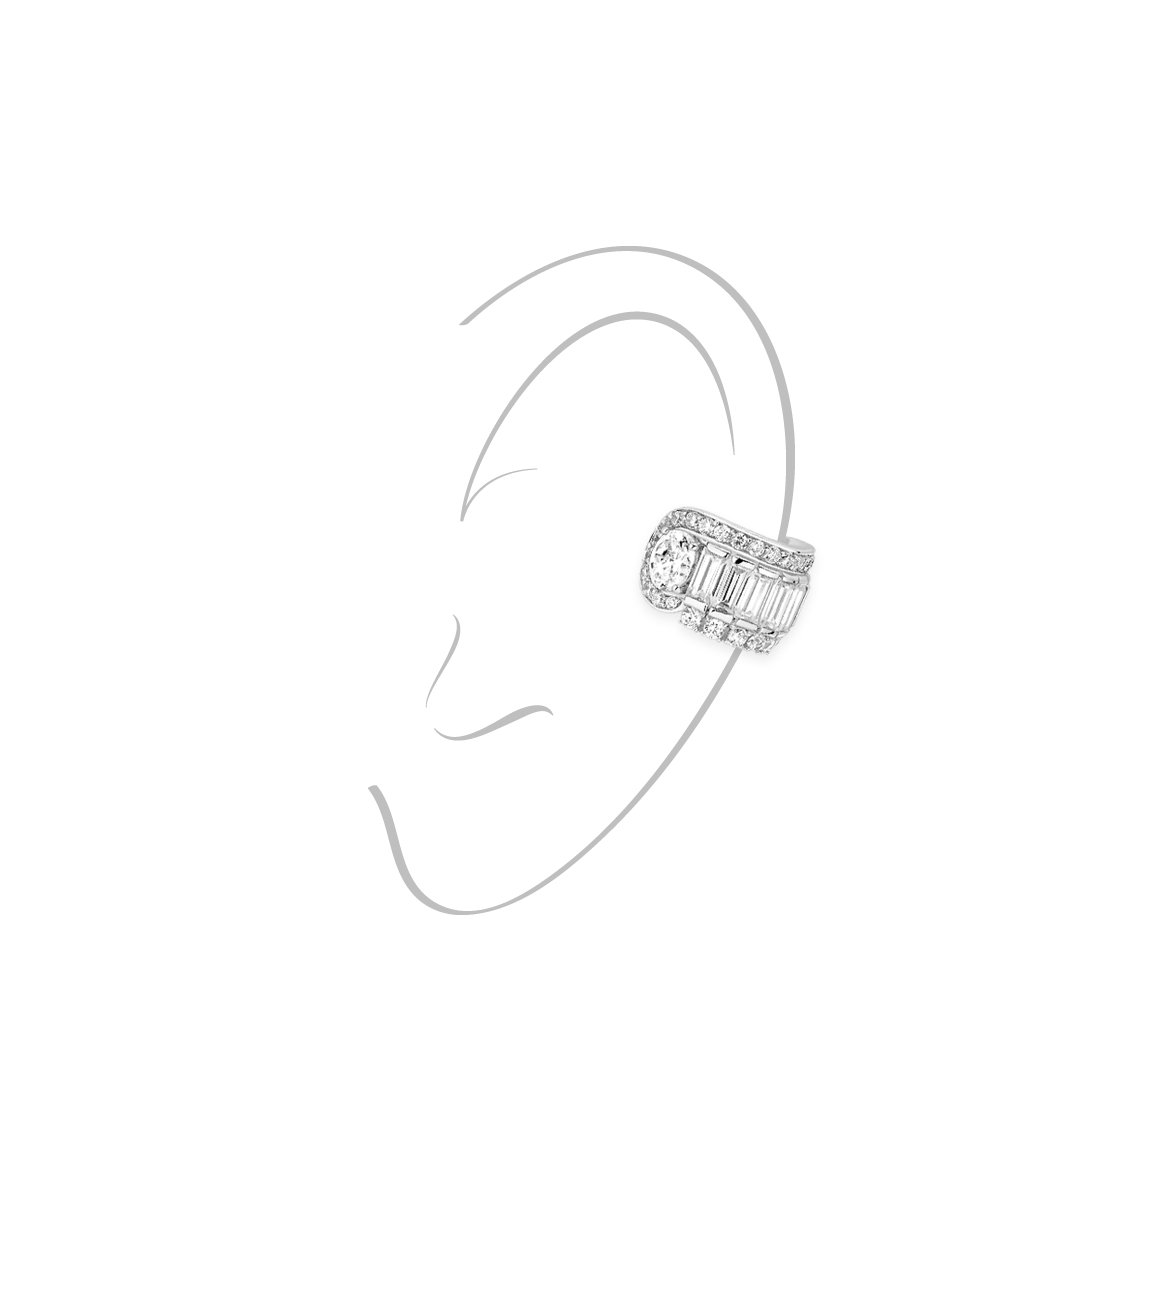 Ear cuff - Rhodium Silver